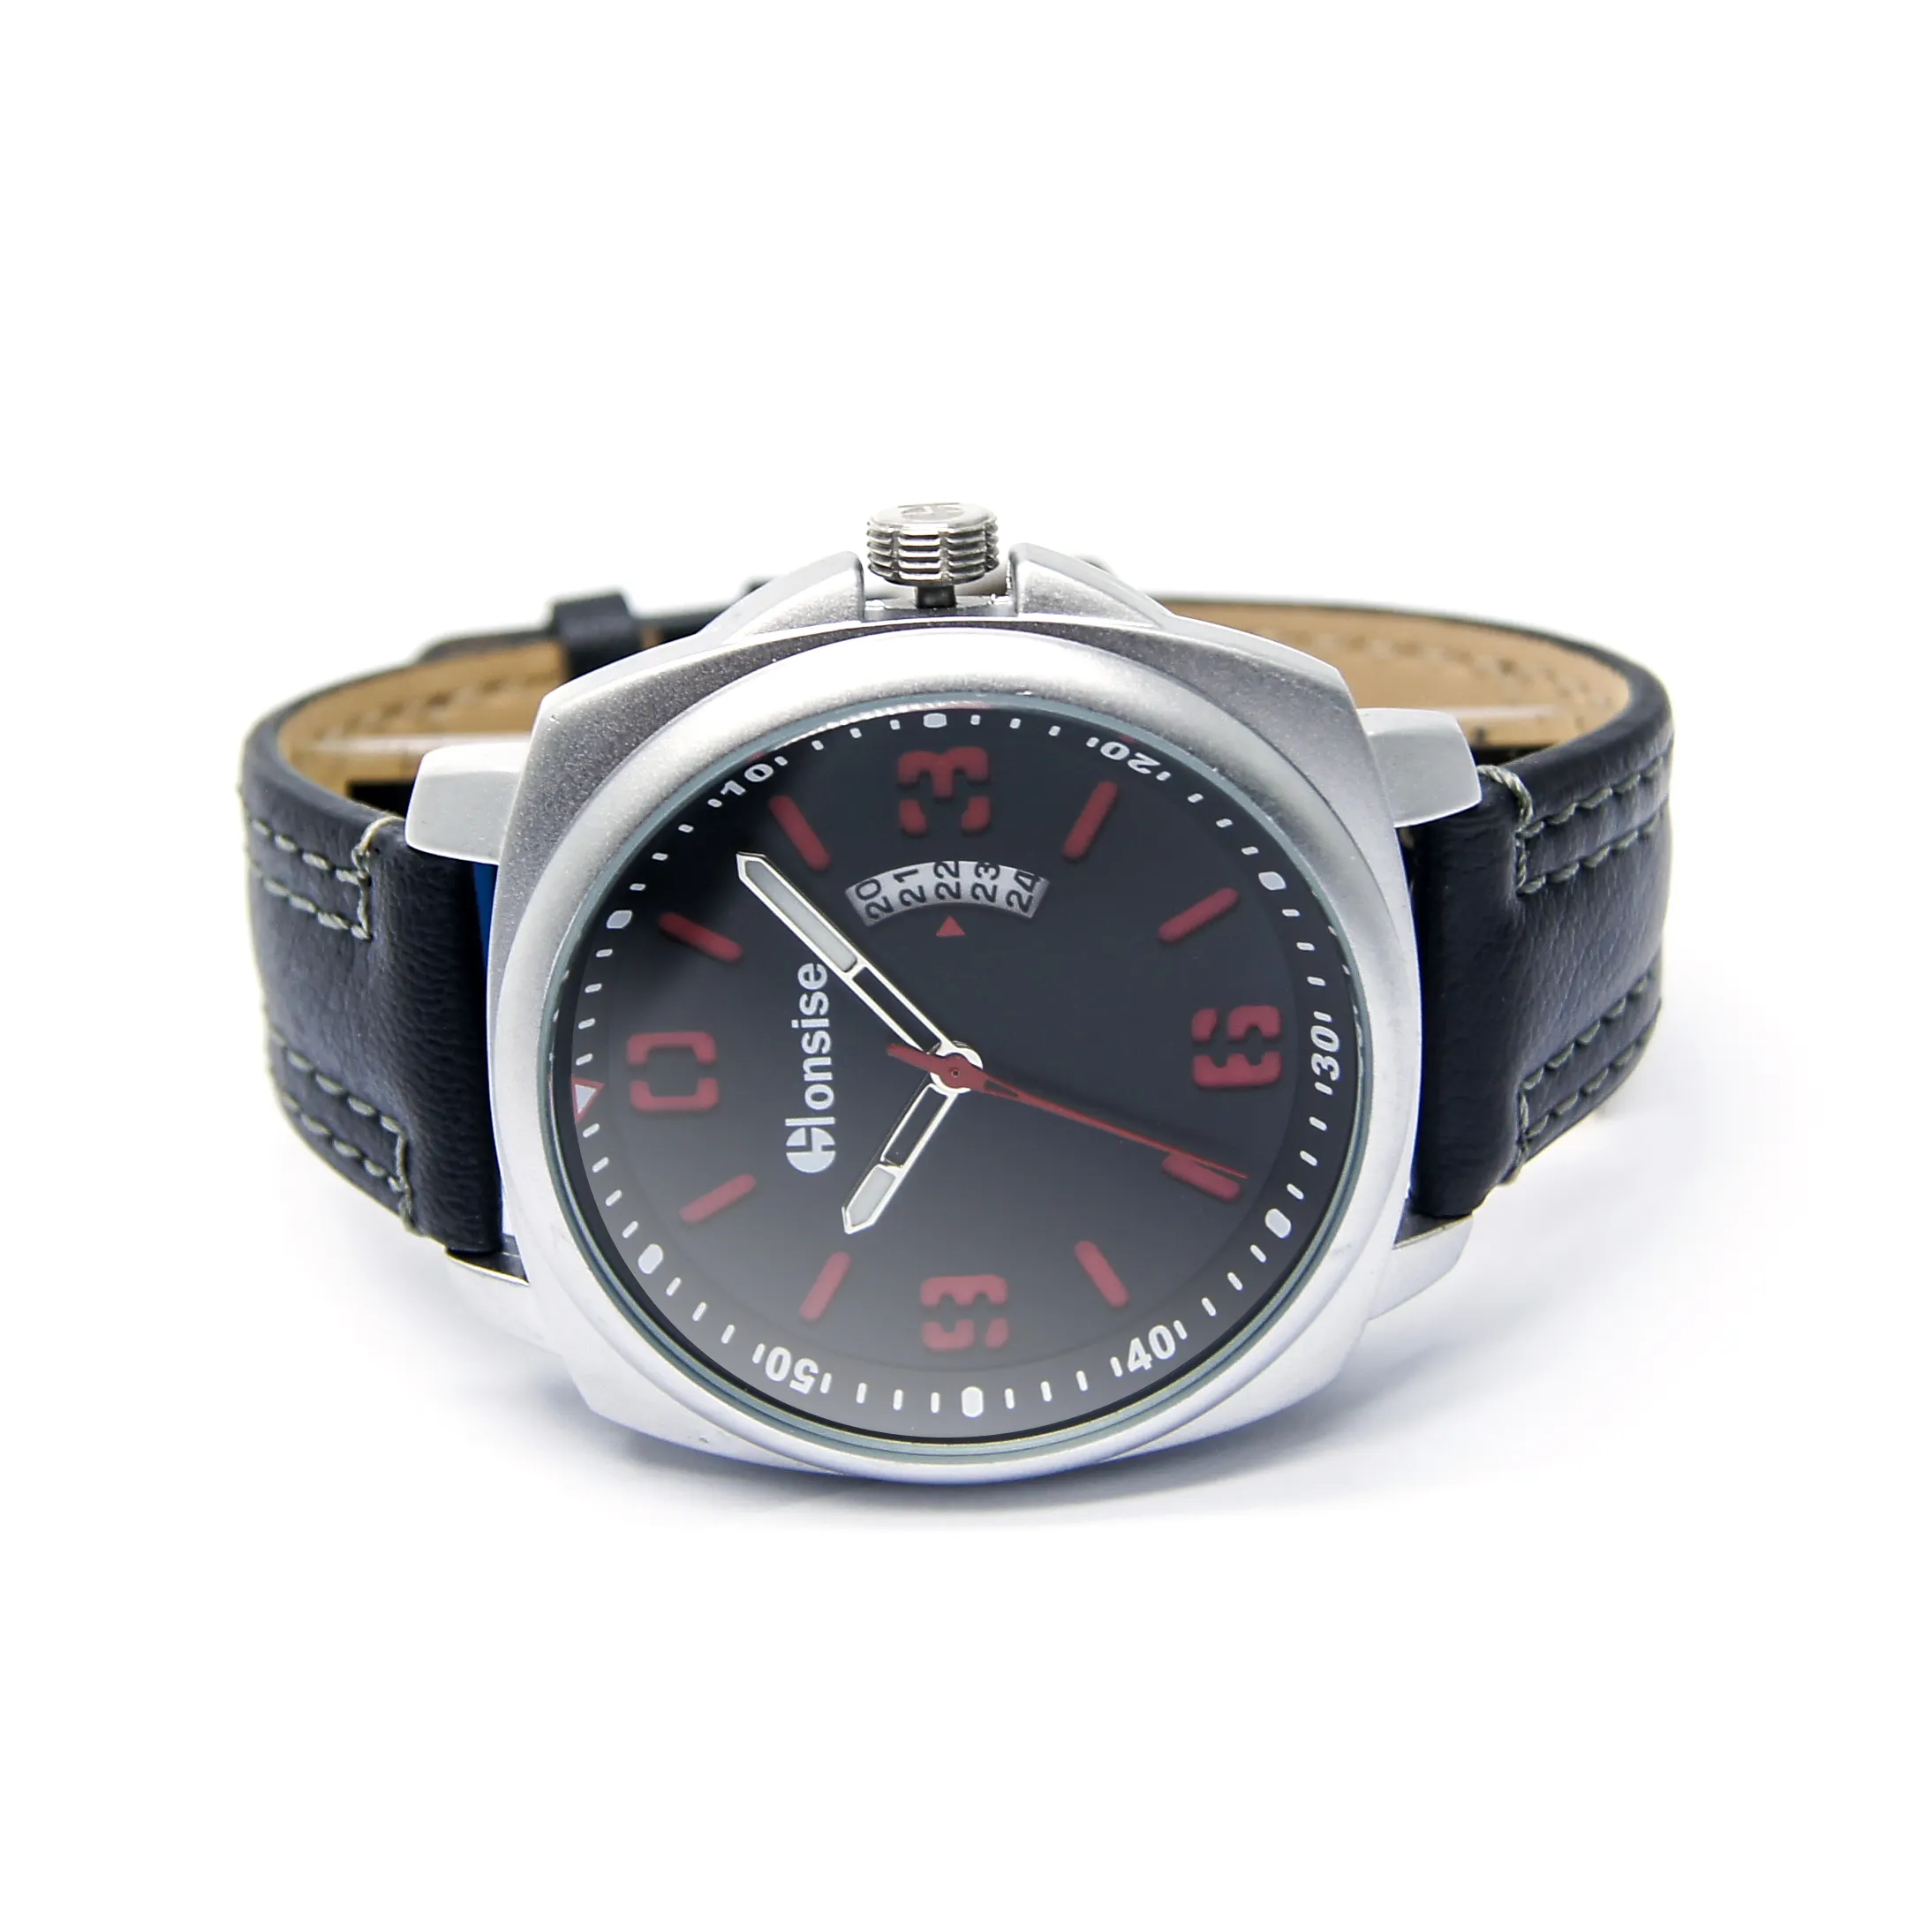 Wrist Watch Battery China Trade,Buy China Direct From Wrist Watch 